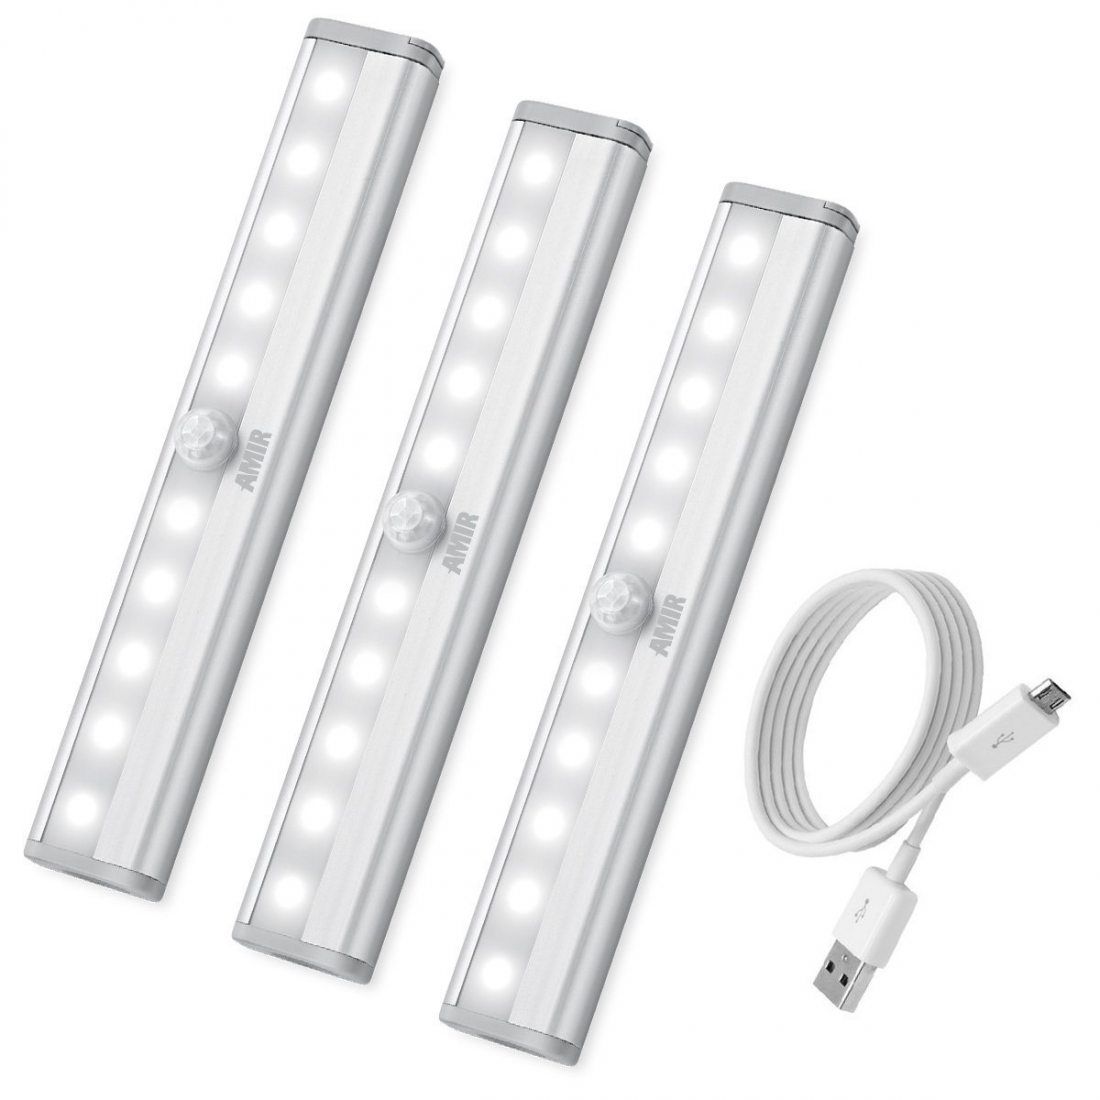 【Upgrade Version】Lampe Détecteur de Mouvement Veilleuse 10 LED avec Bande Magnétique Blanc froid Sans Fil Alimenté par Batterie Lumière Automatique dArmoire Placard Cabinet 